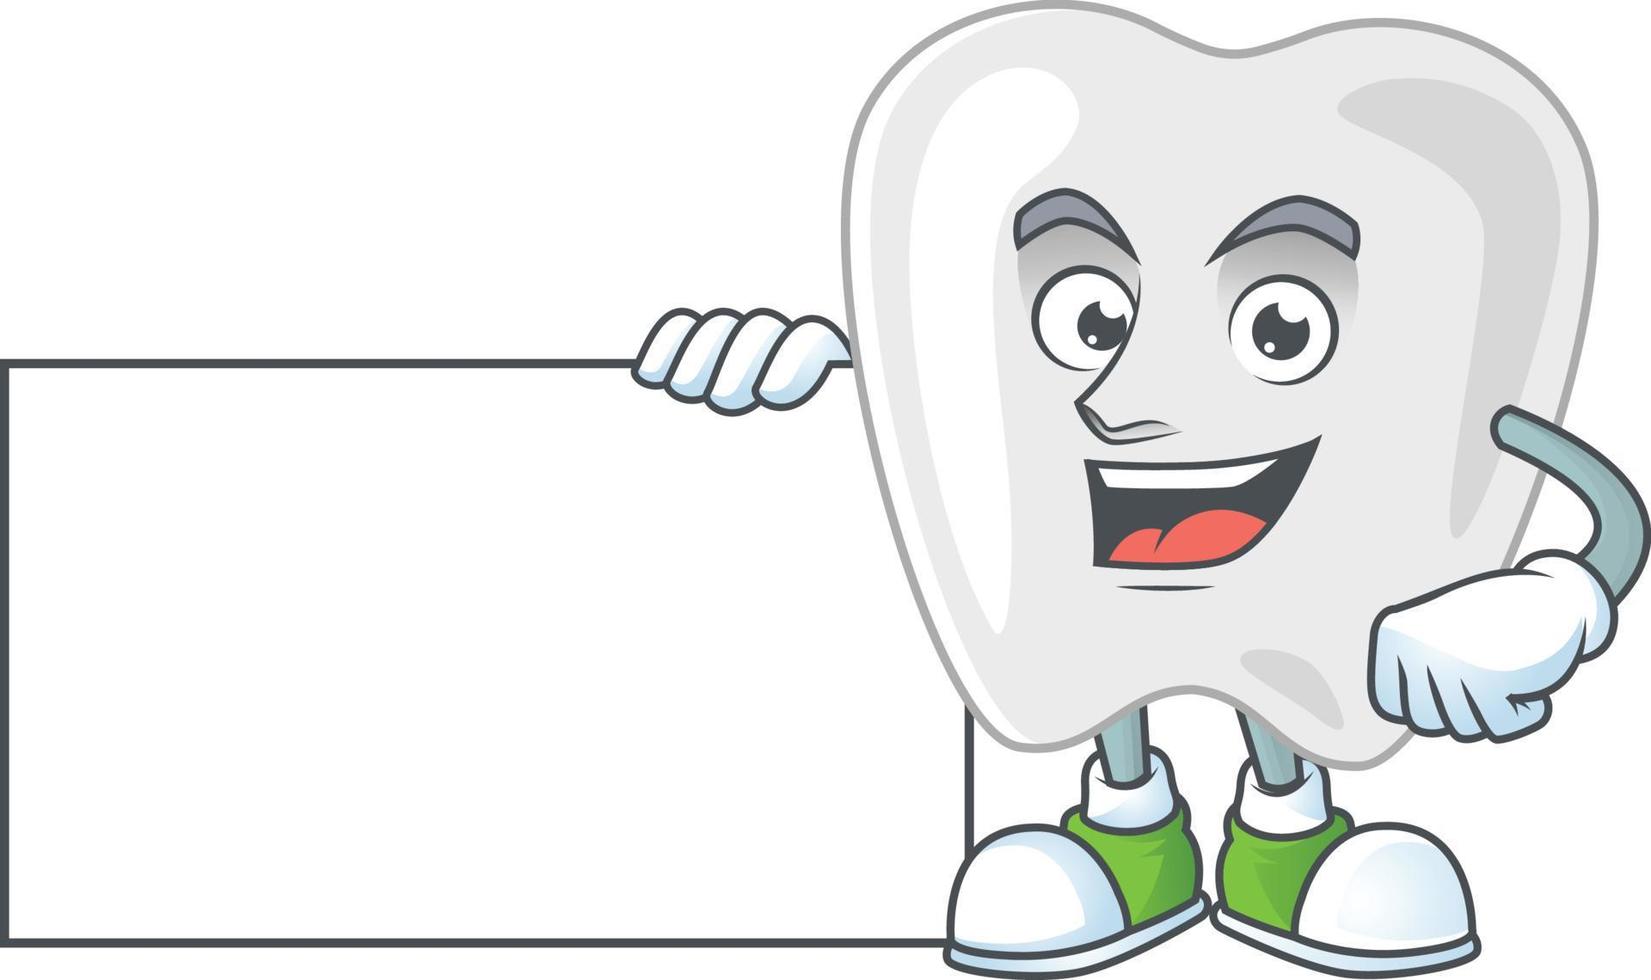 Teeth Cartoon character vector